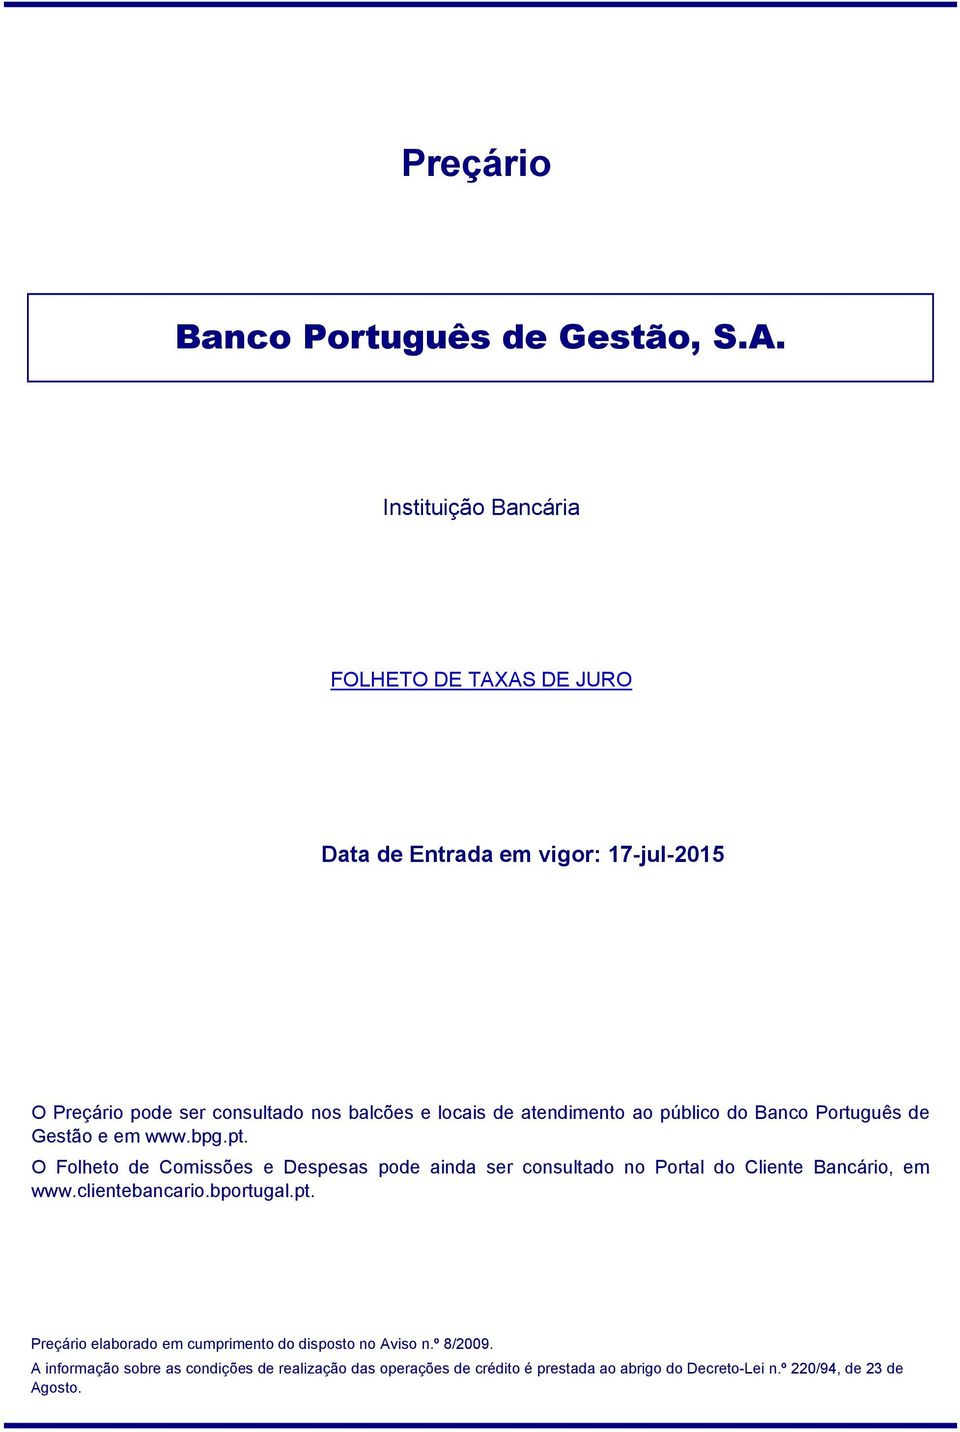 Banco Português de Gestão e em www.bpg.pt.